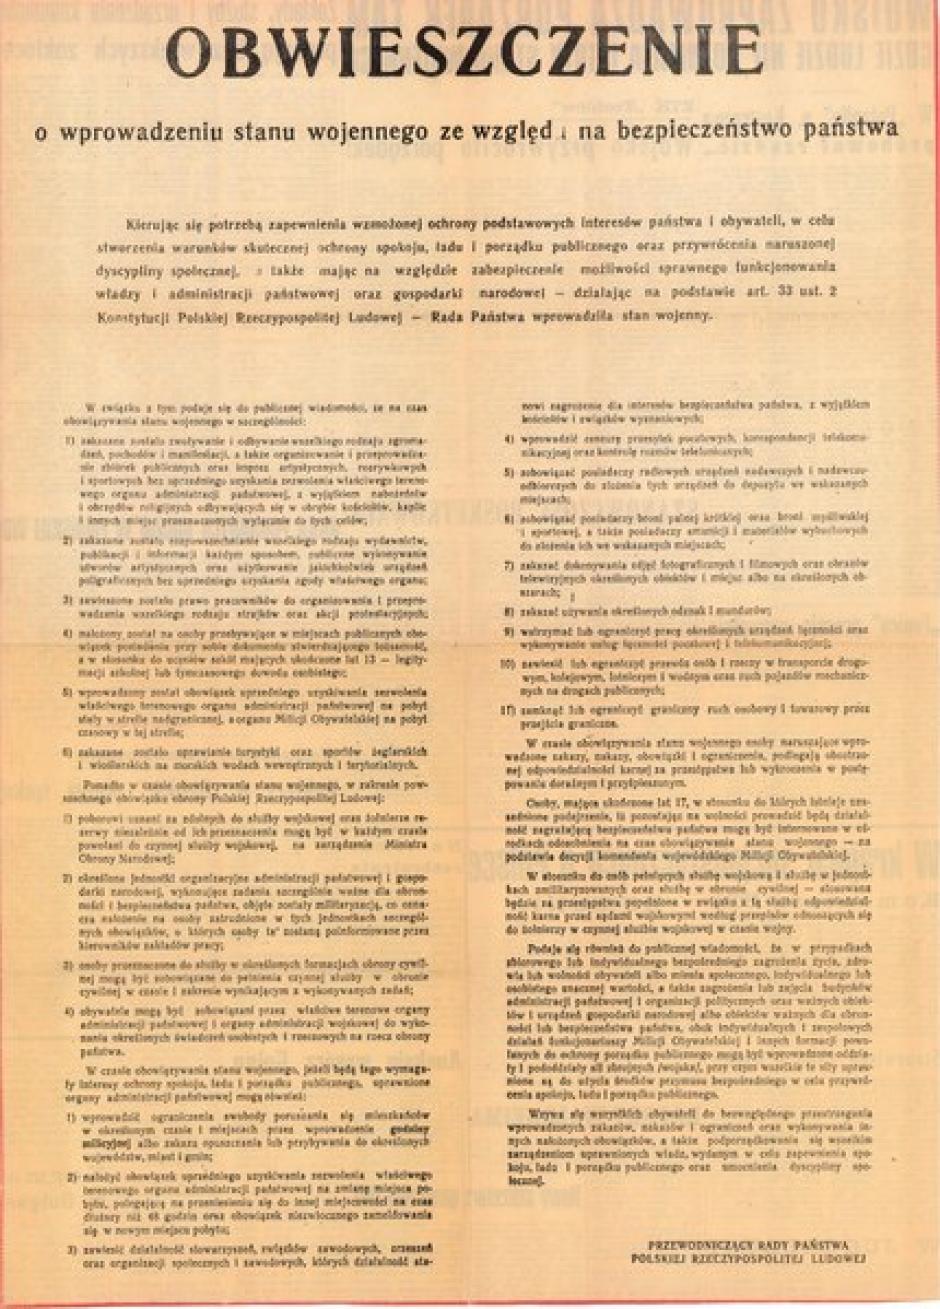 El anuncio sobre la introducción de la ley marcial, 1981